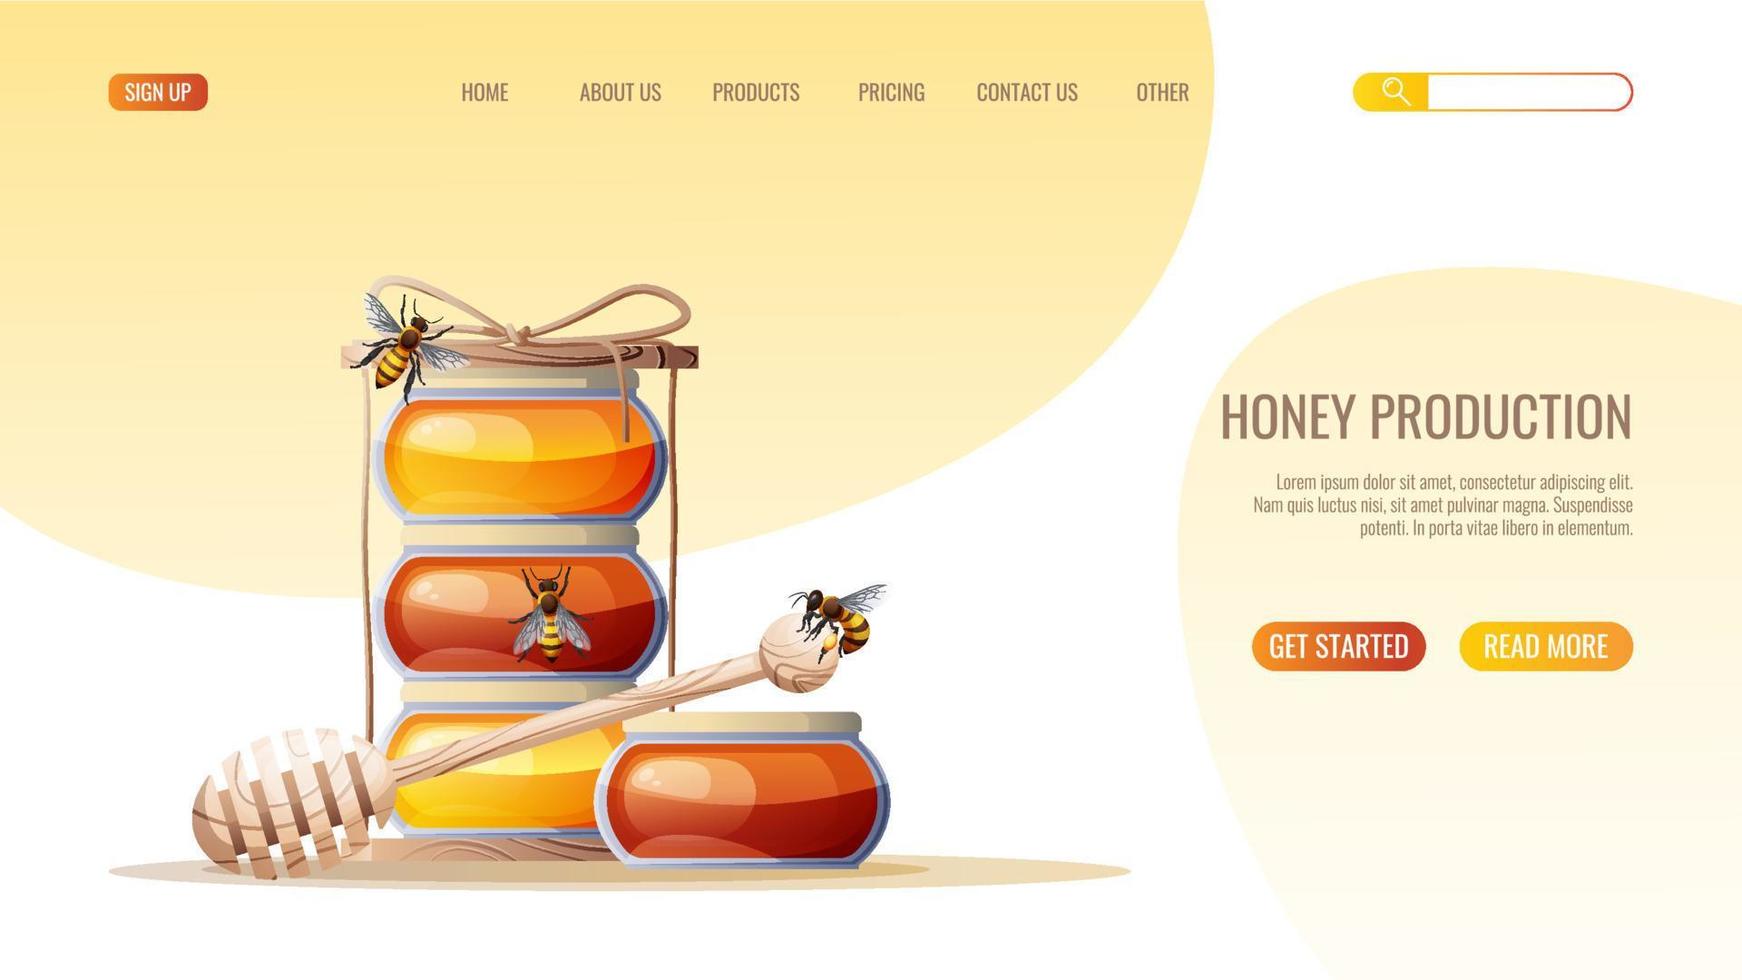 comida sana, producto natural. tarro de miel, cuchara, miel, abejas. plantilla de diseño de página web para tienda, sitio web de miel. ilustración vectorial para banner, publicidad, página web, portada vector